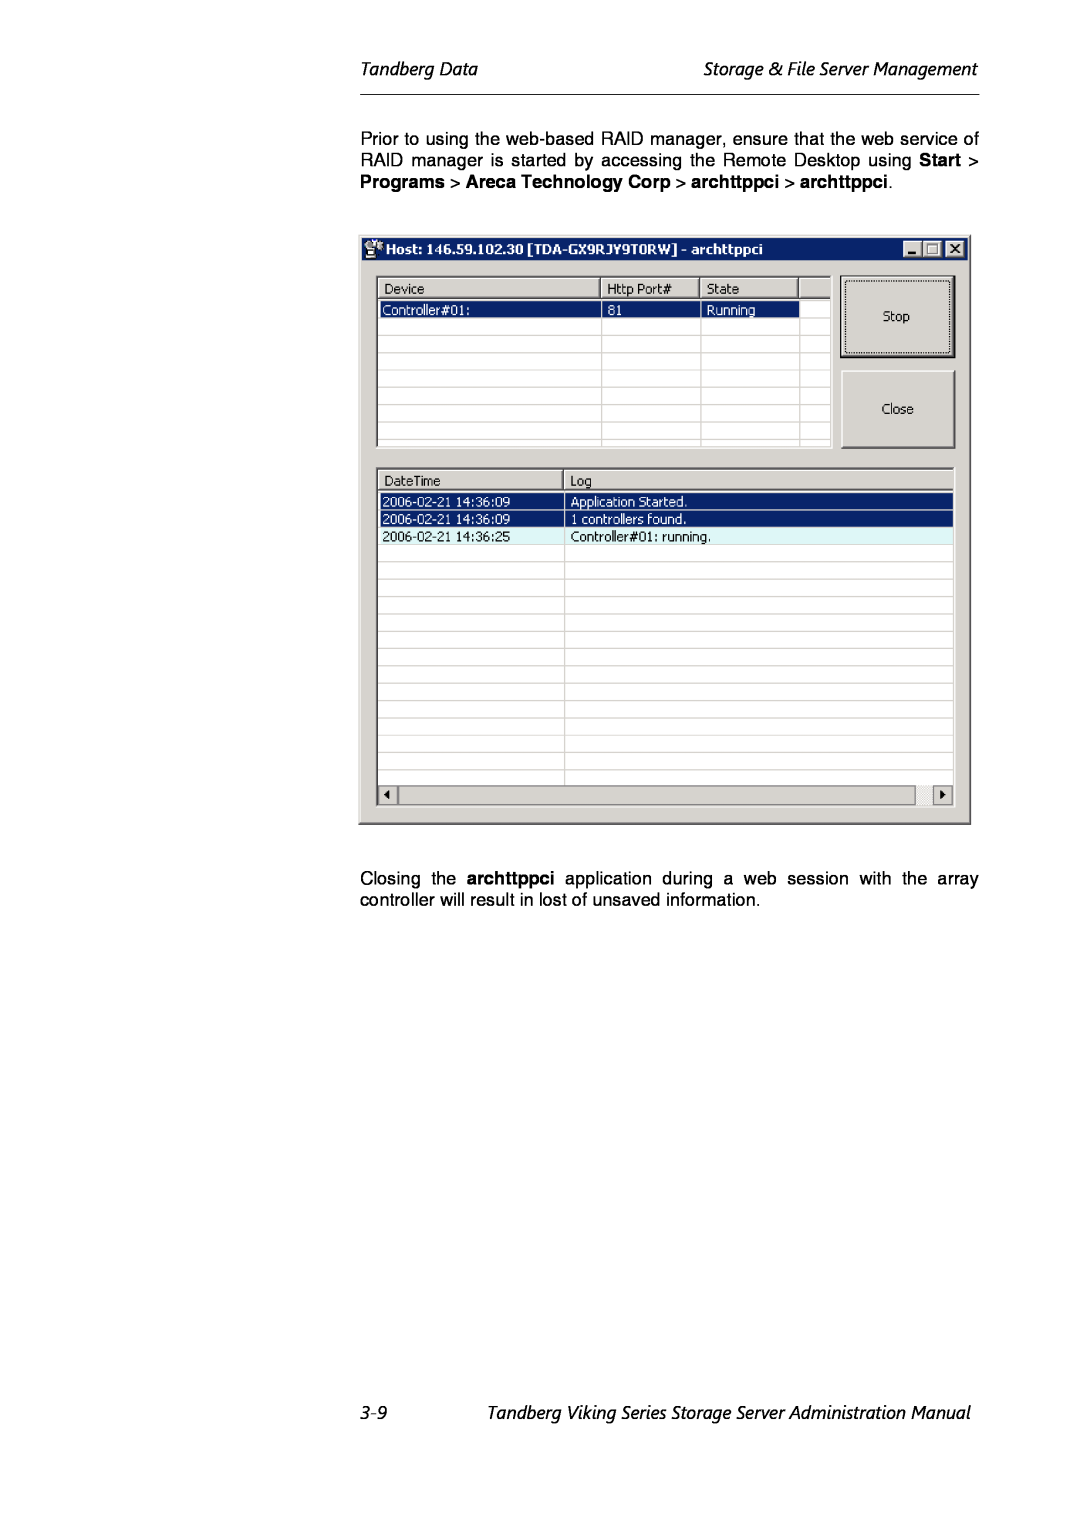 Tandberg Data Viking FS-412, Viking FS-1600, Viking FS-1500 manual Tandberg DataStorage & File Server Management 